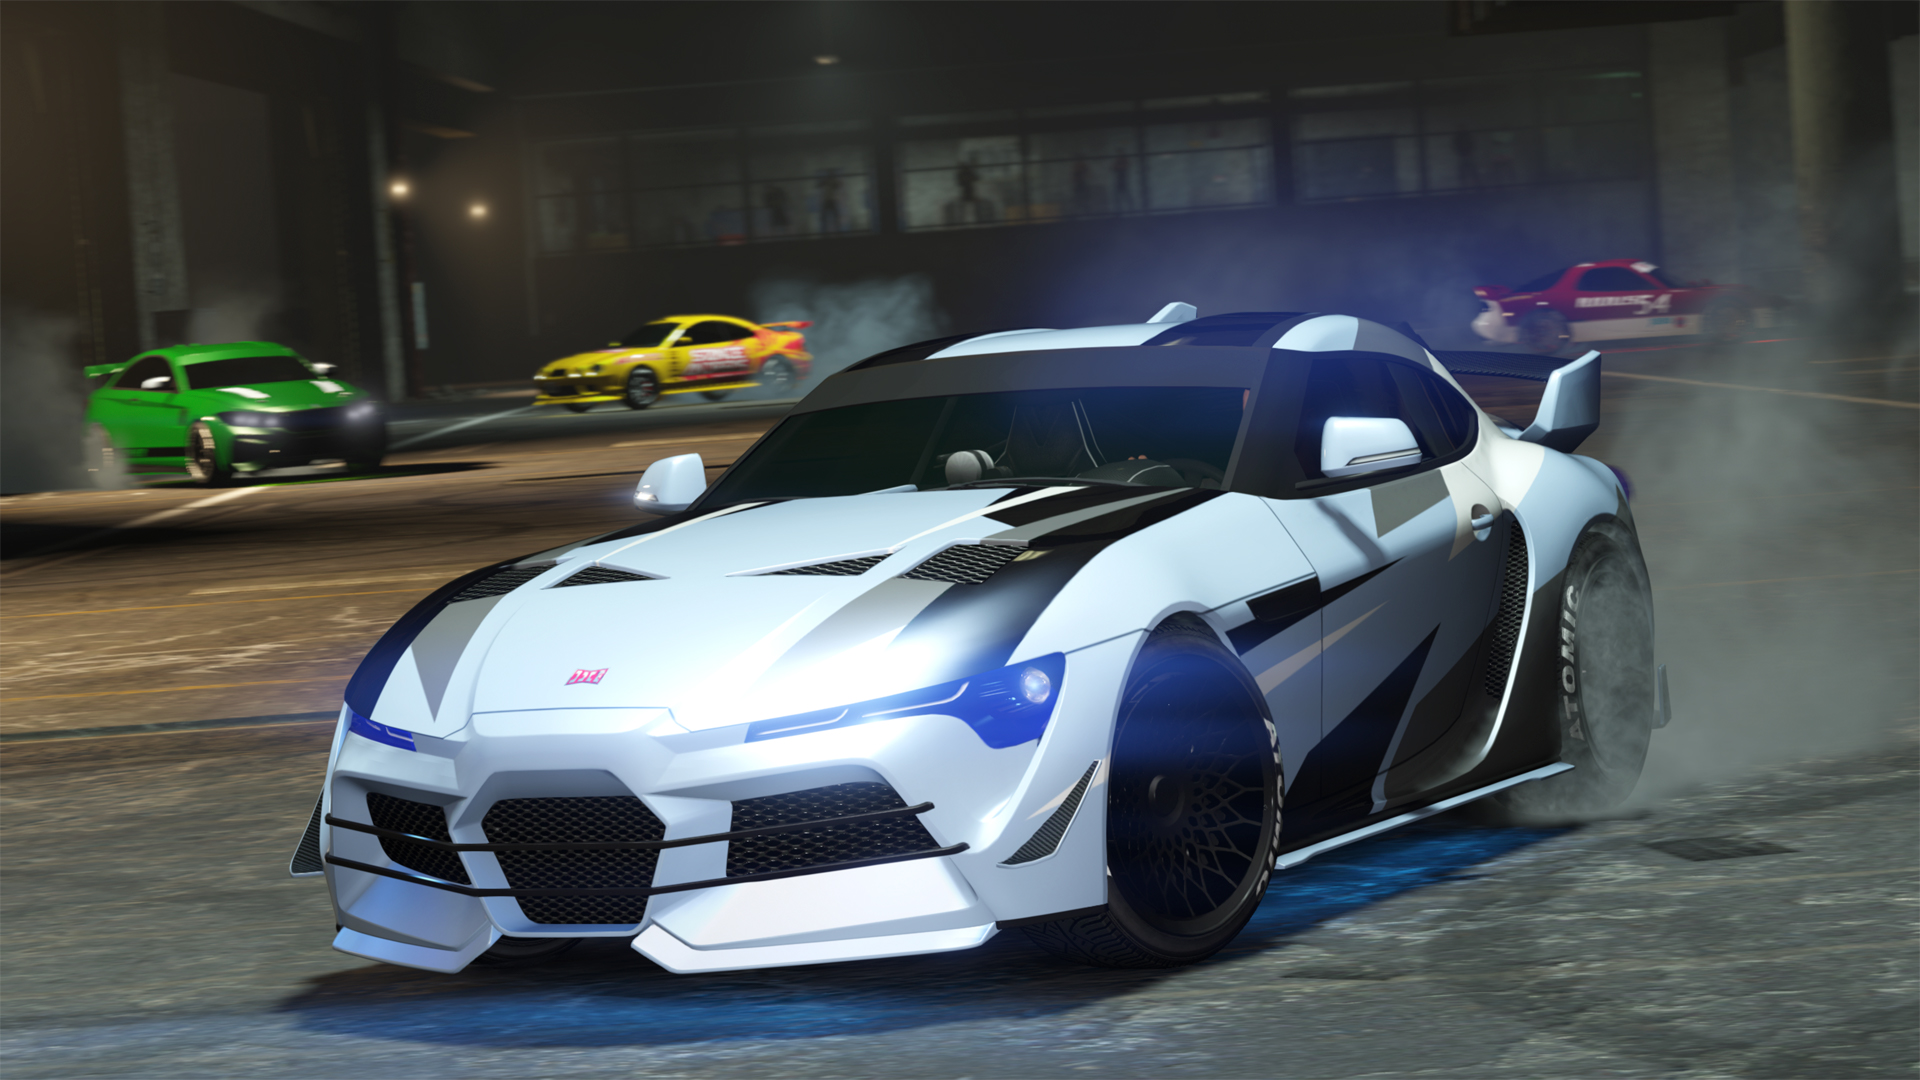 GTA 5 Online Race Full Gameplay (GTA V PC Super Cars Race) 